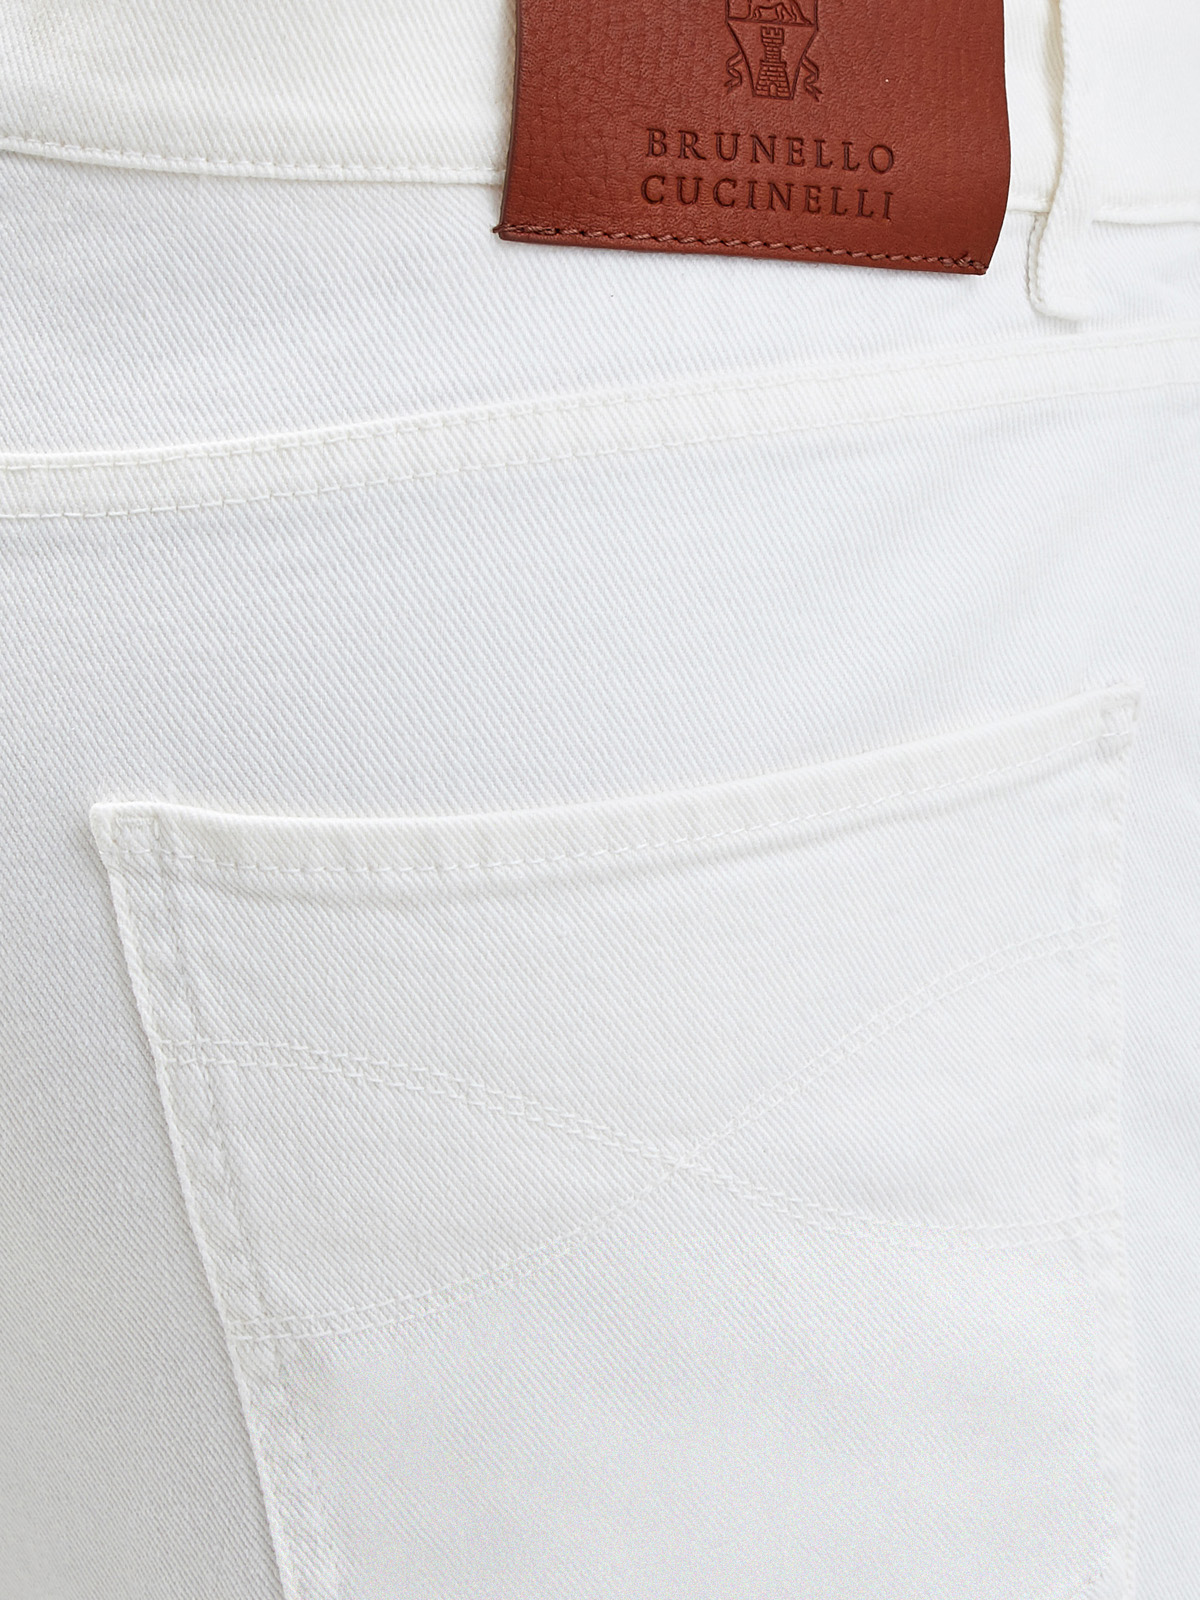 Джинсы в стиле sprezzatura из окрашенного вручную денима BRUNELLO CUCINELLI, цвет белый, размер 46;50;52 - фото 6